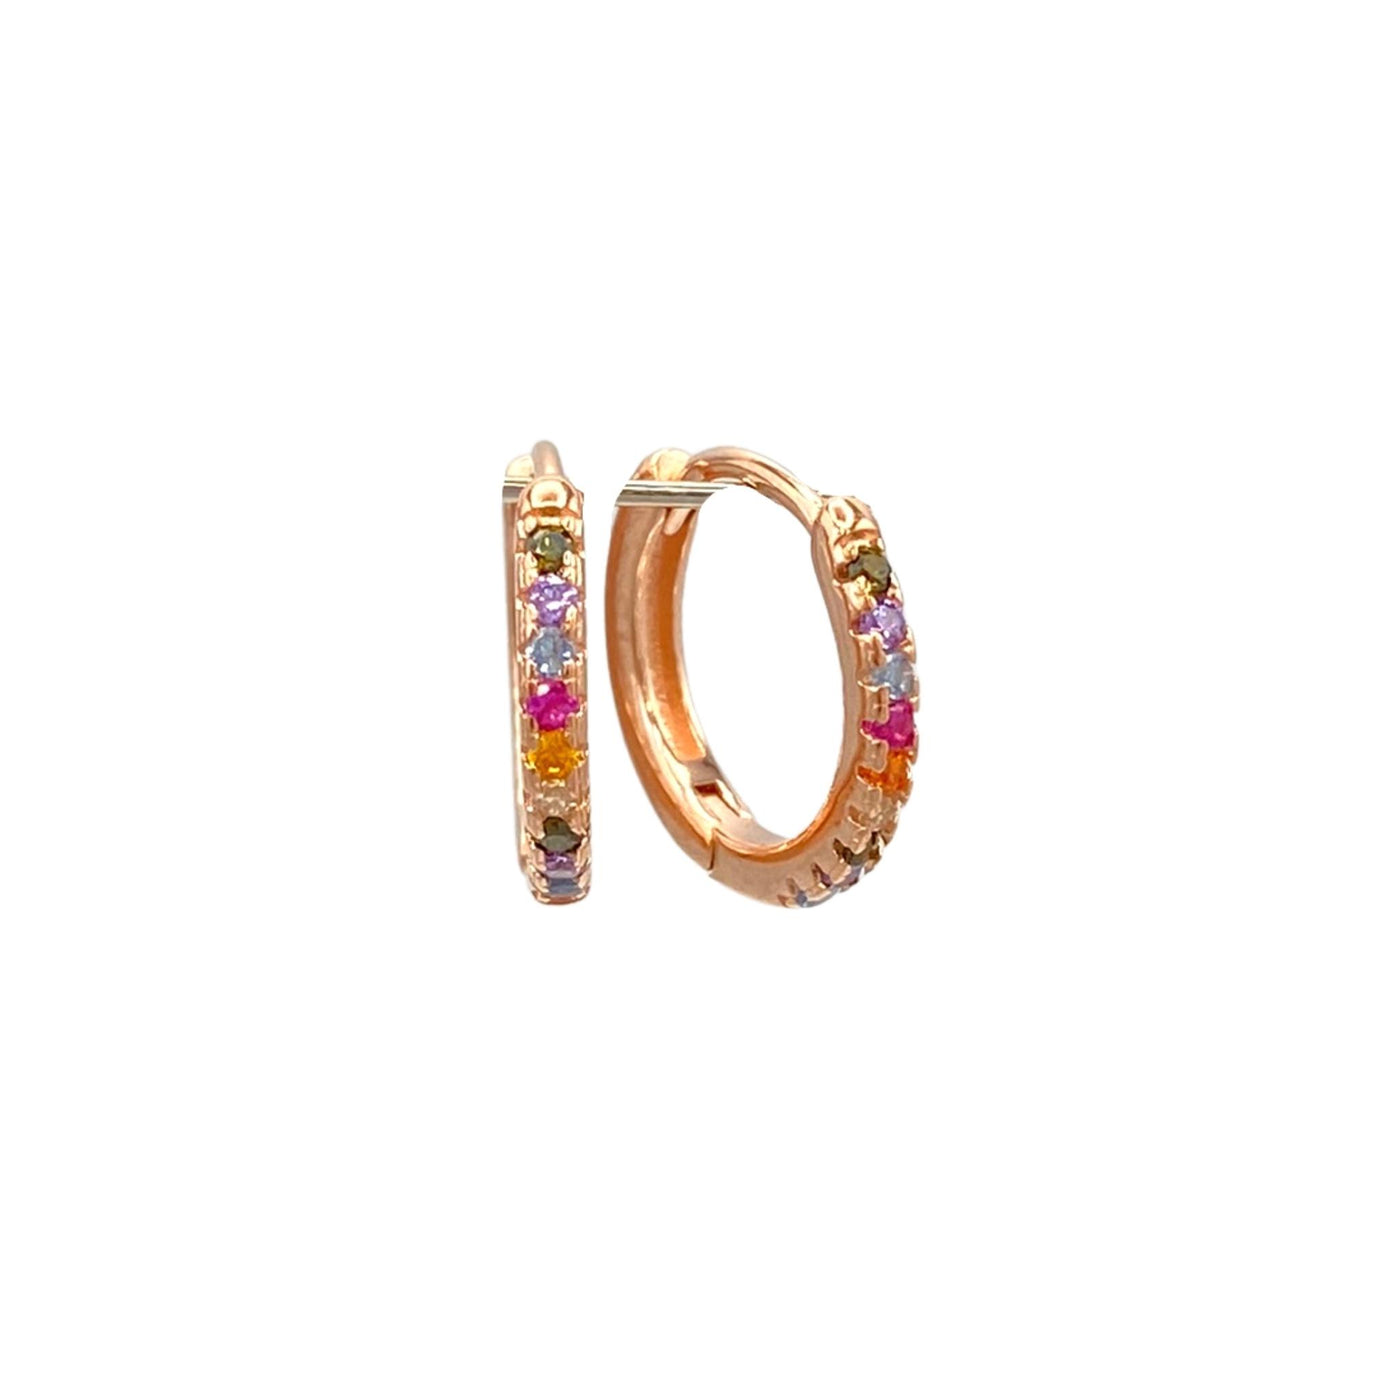 Silver hoop earrings with stones - rose -13 mm